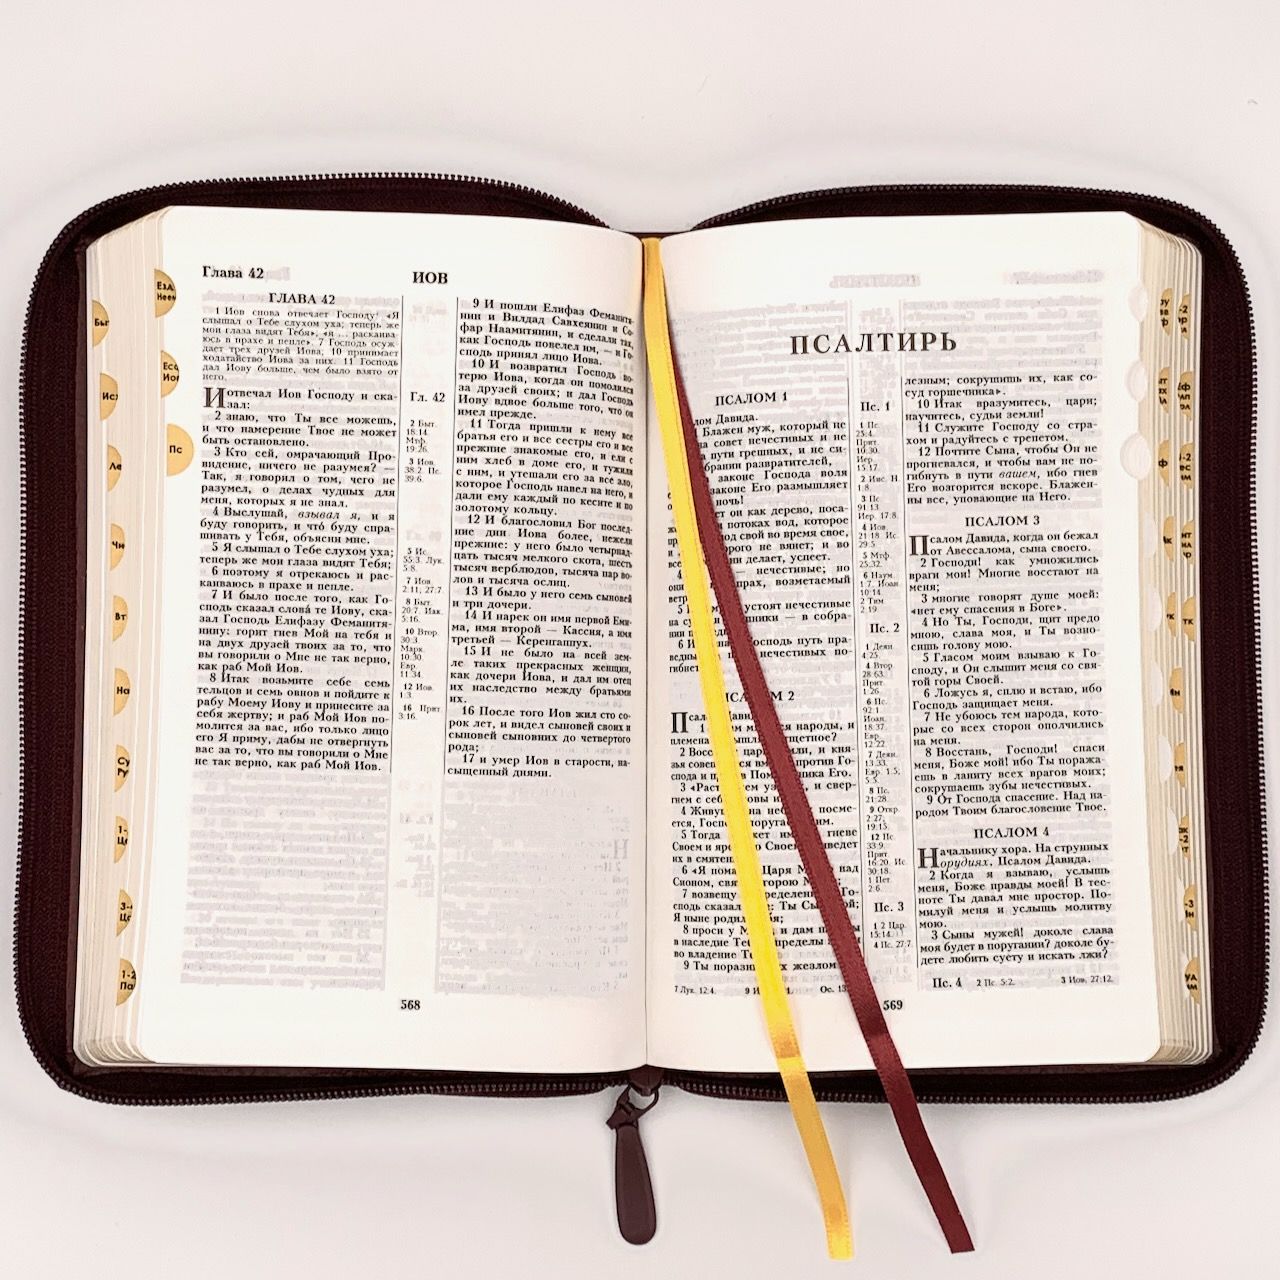 Библия 055zti код D2 дизайн "слово Библия", кожаный переплет на молнии с индексами, цвет бордовый пятнистый, средний формат, 143*220 мм, параллельные места по центру страницы, белые страницы, золотой обрез